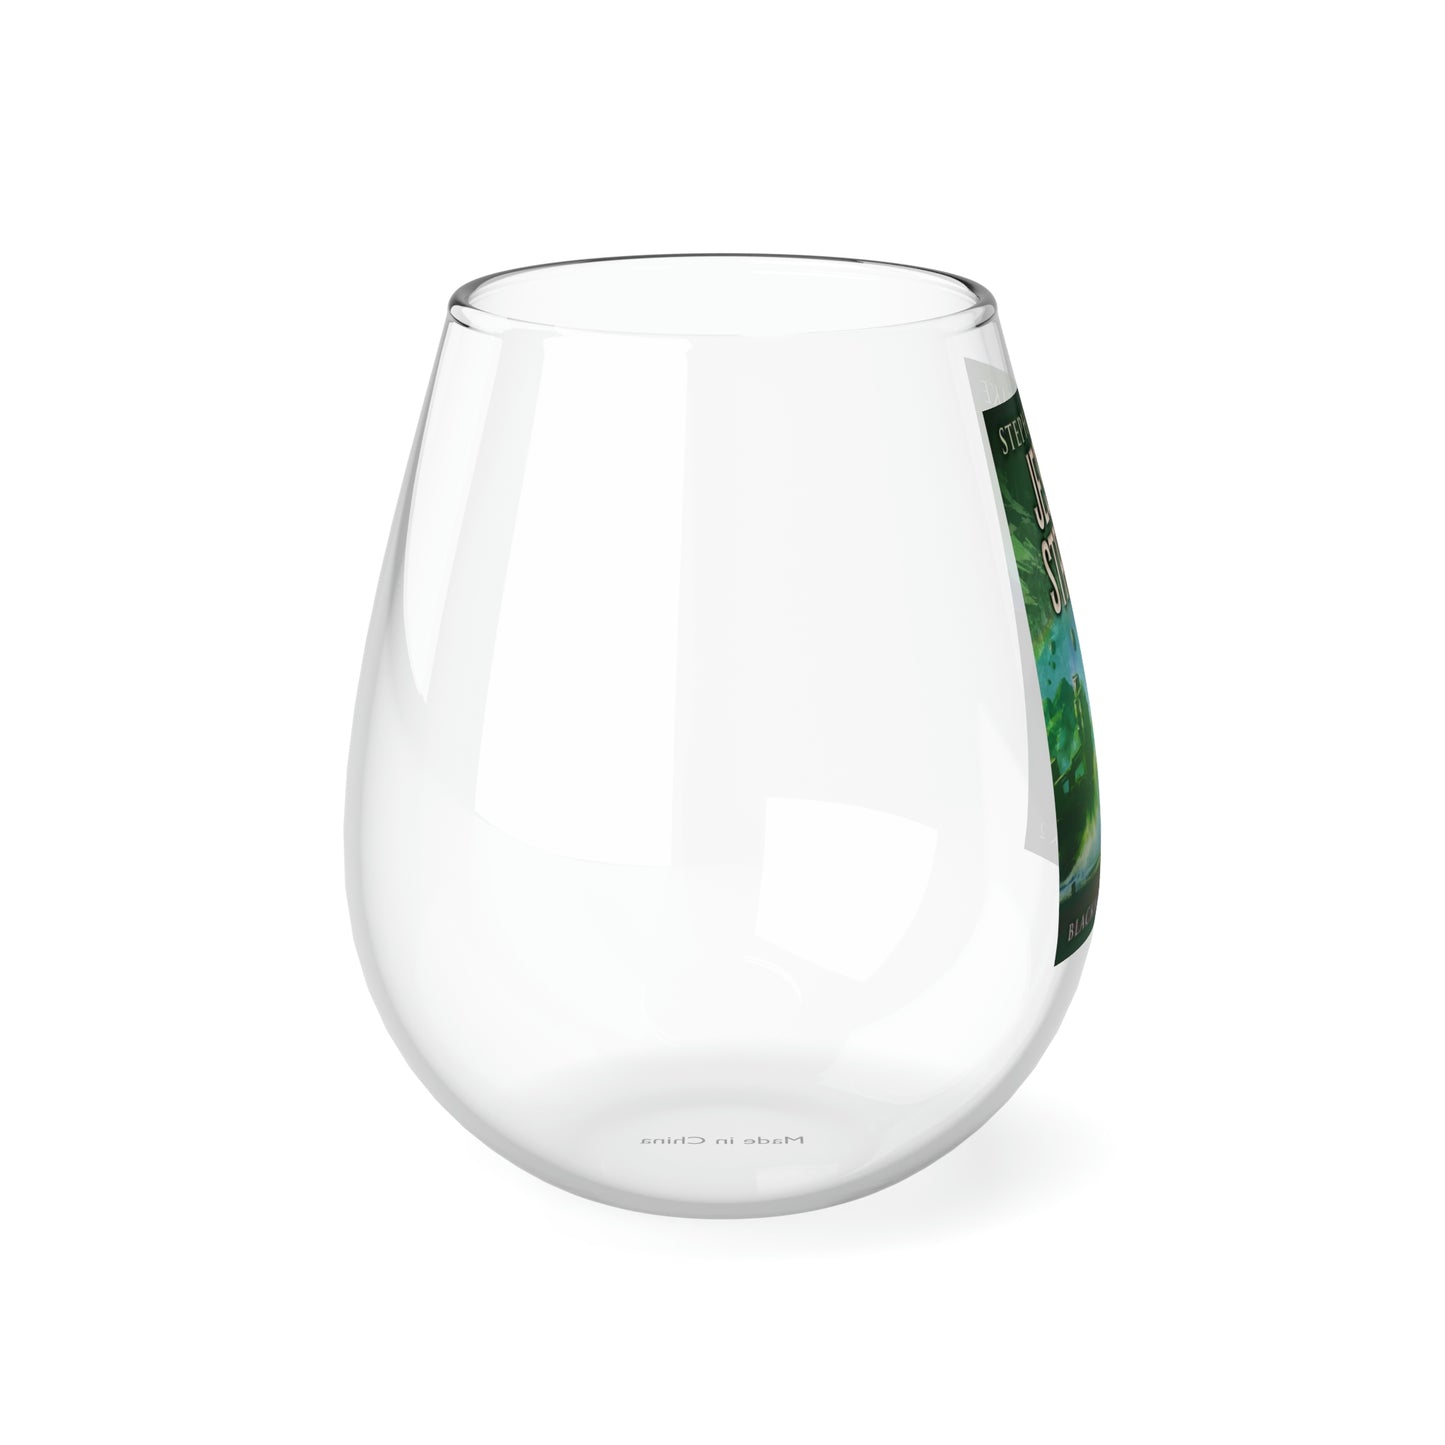 Jessica Strange - Stemless Wine Glass, 11.75oz